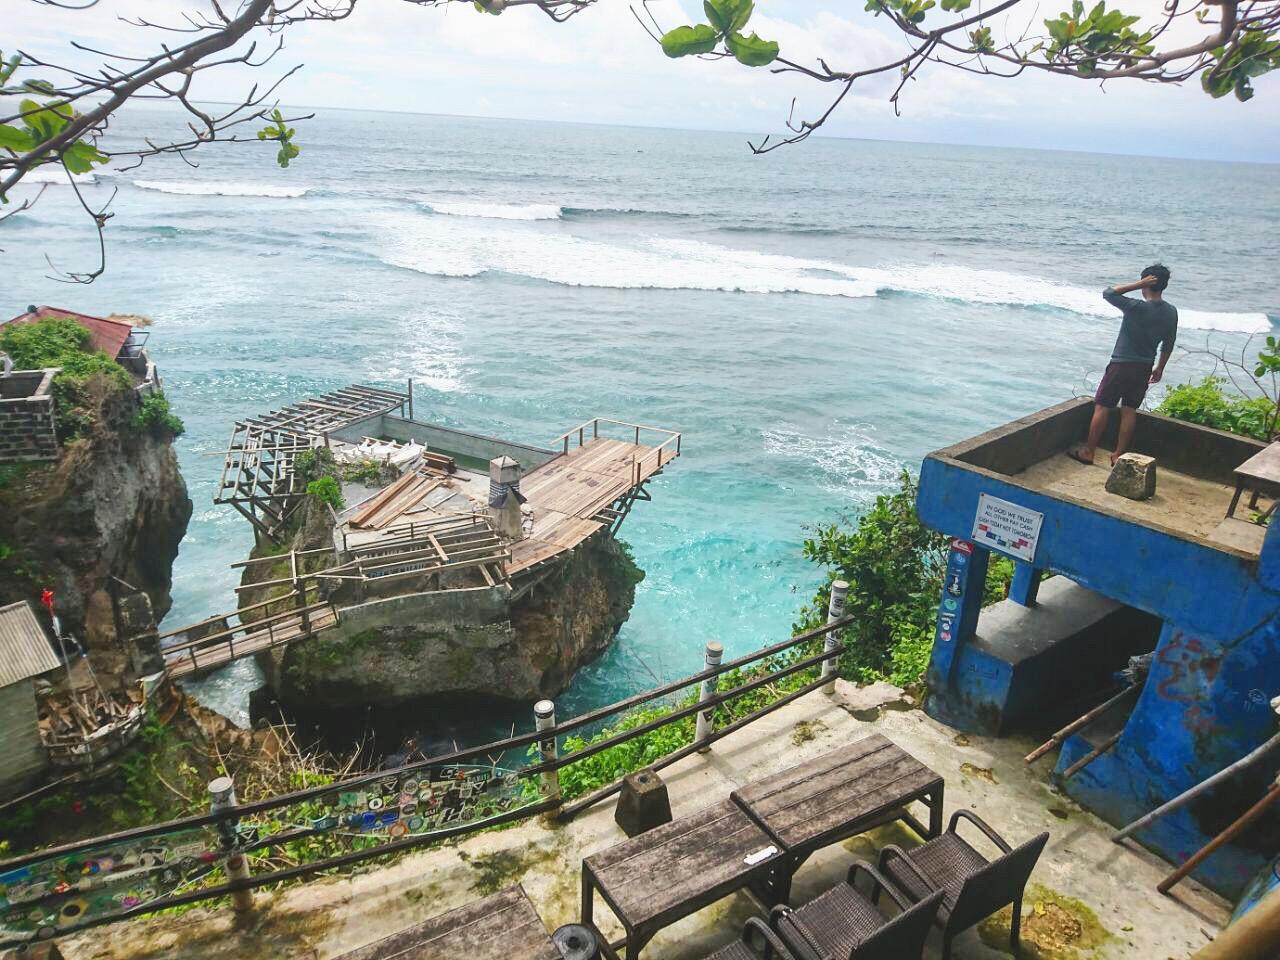 Sedikit Bukti Keindahan Bali dari Sisi Lain